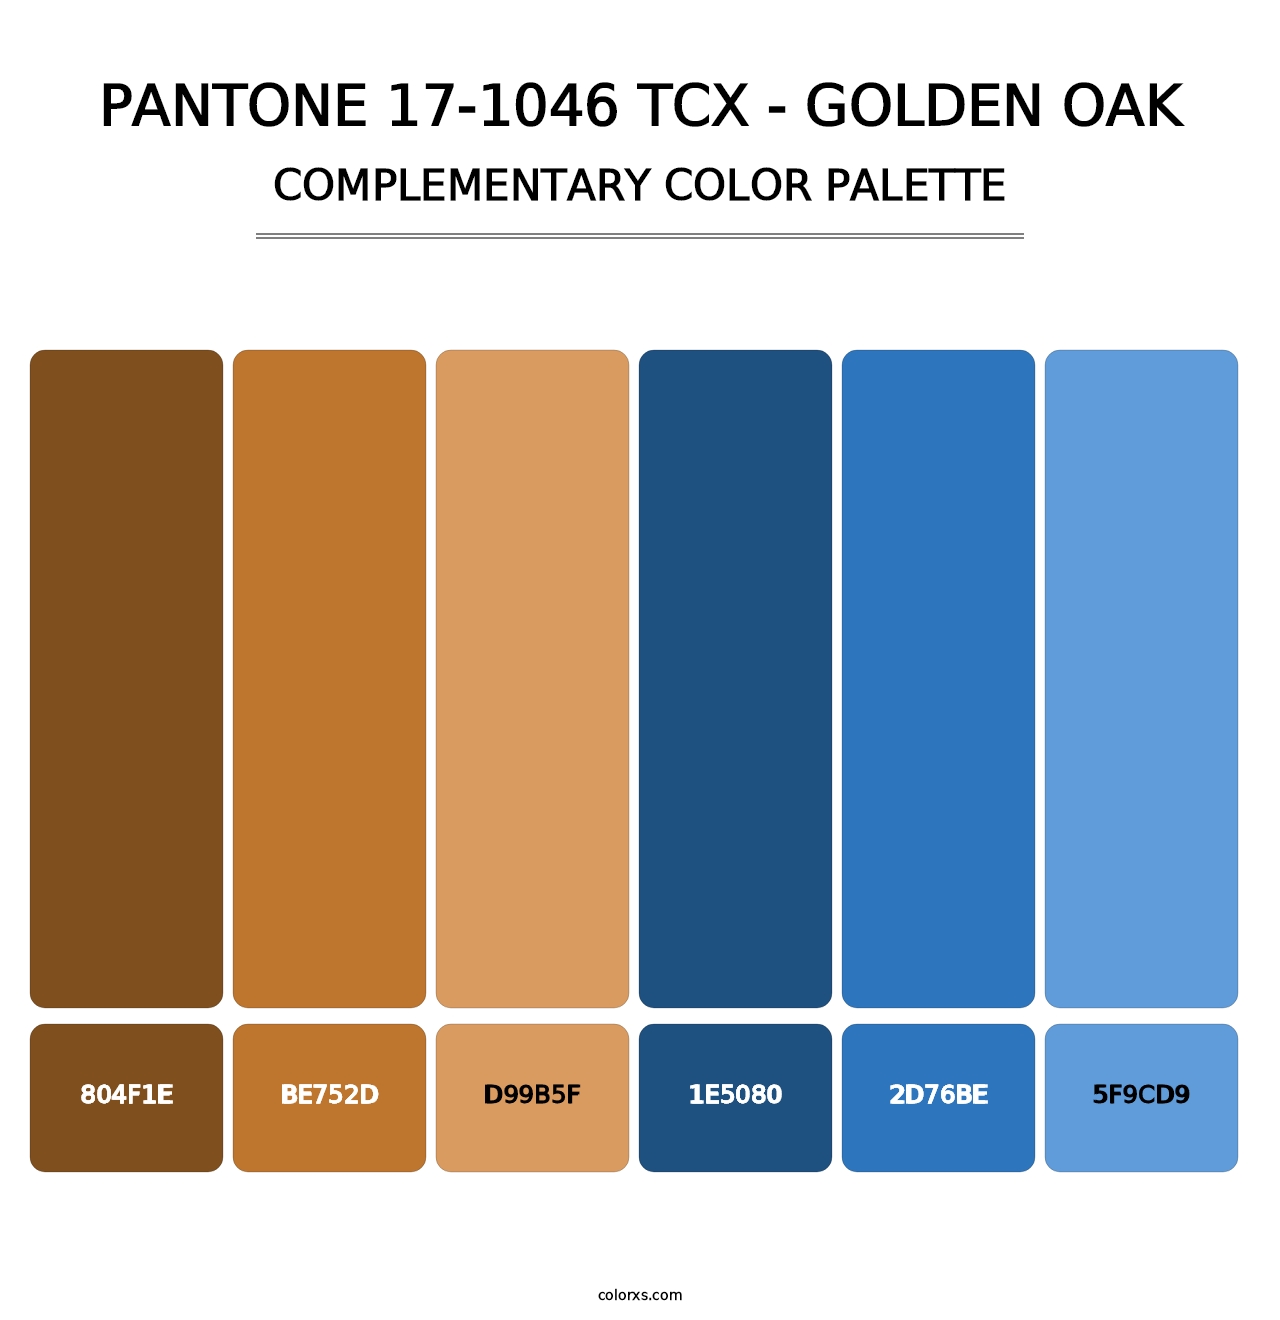 PANTONE 17-1046 TCX - Golden Oak - Complementary Color Palette